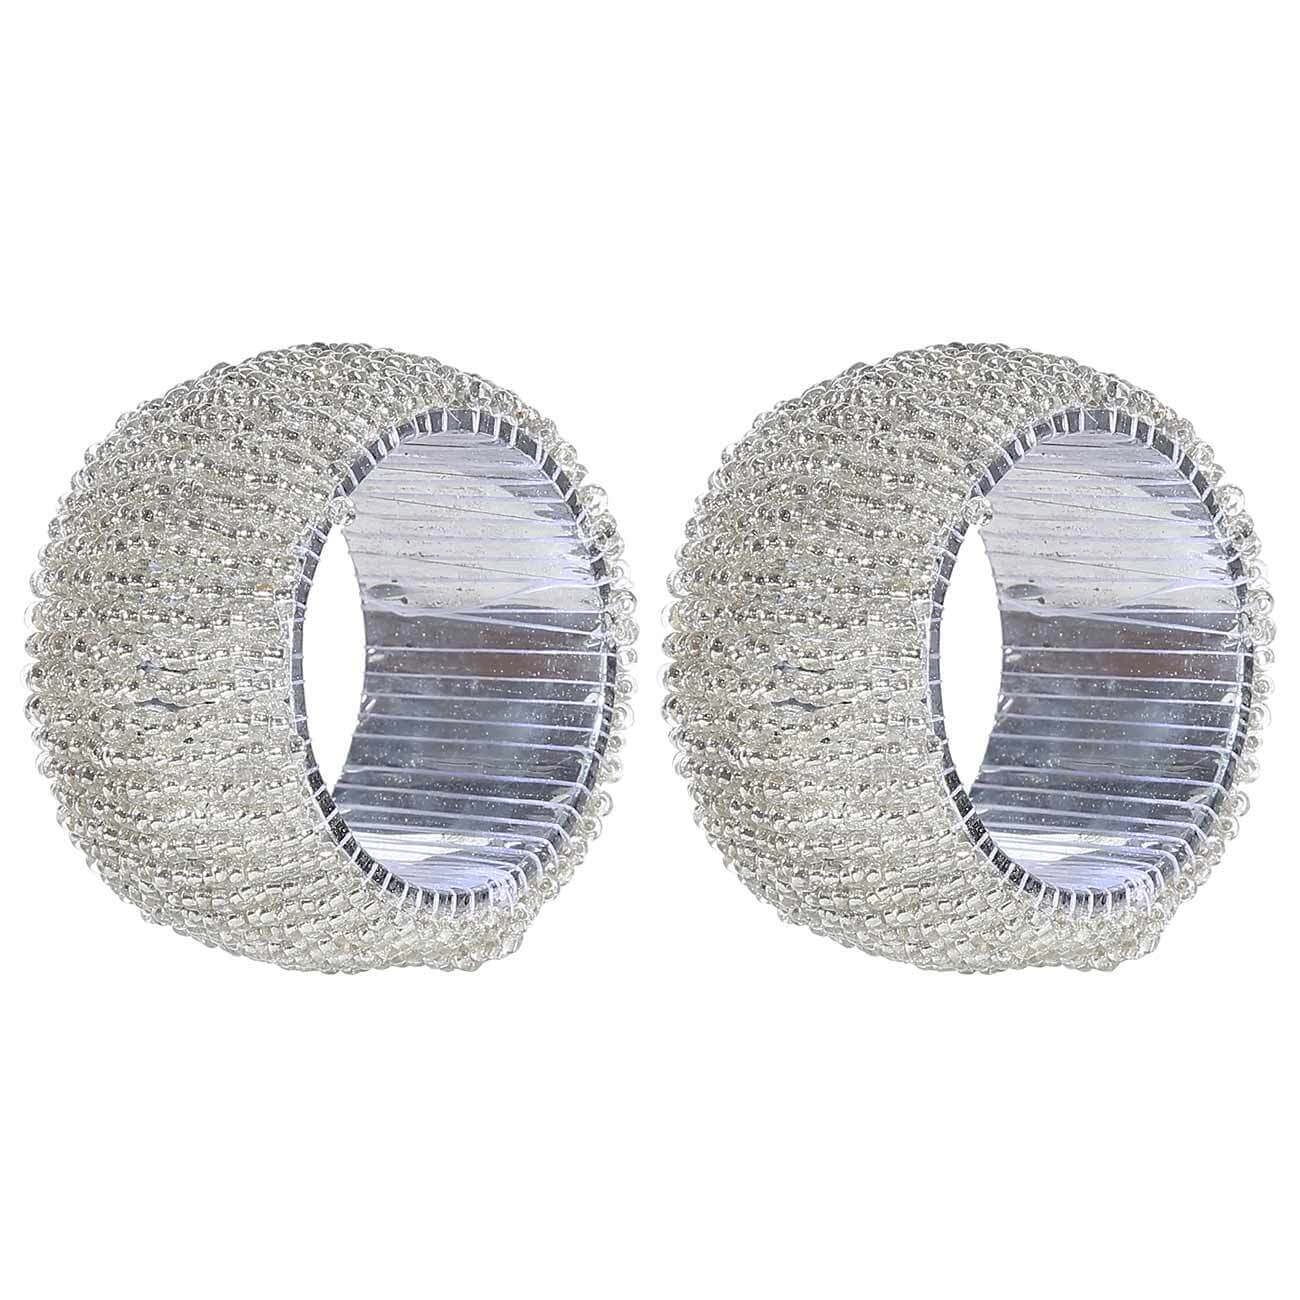 Кольцо для салфеток, 5 см, 2 шт, бисер, круглое, белое, Shiny beads кольцо для салфеток 5 см 2 шт бисер круглое белое shiny beads